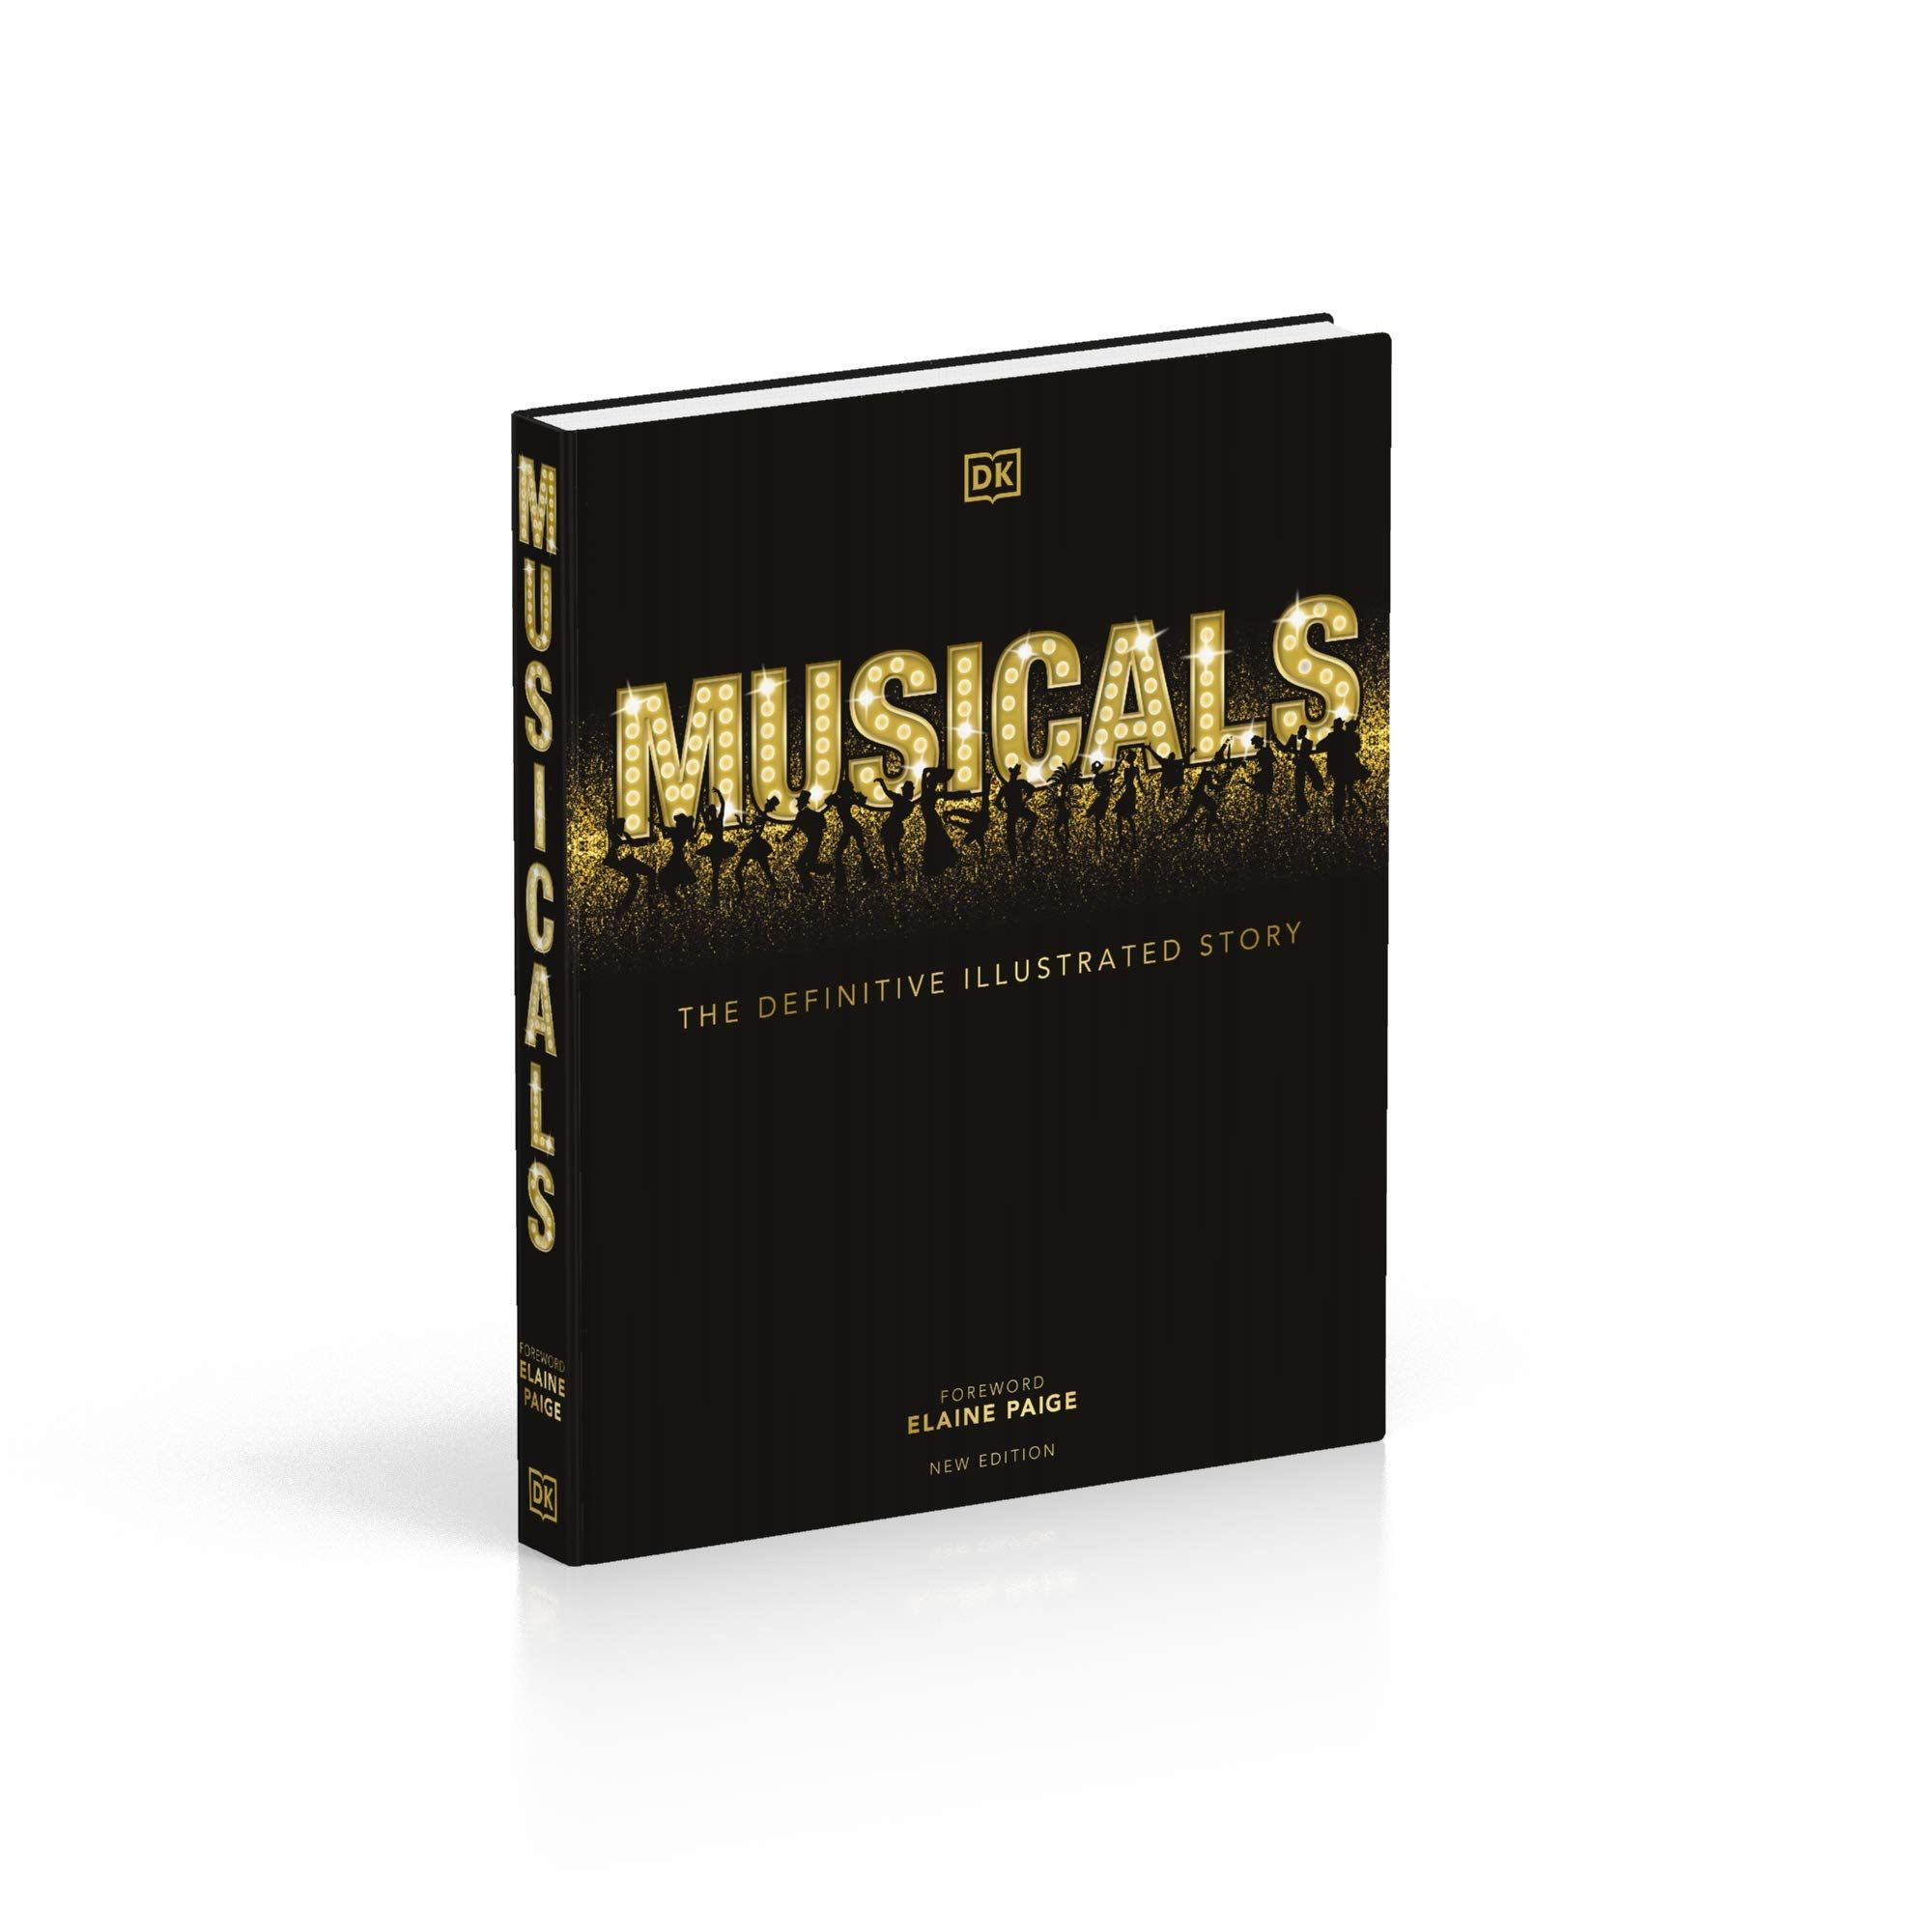  Musicals : The Definitive Illustrated Story_DK_9780241437537_Dorling Kindersley Ltd 